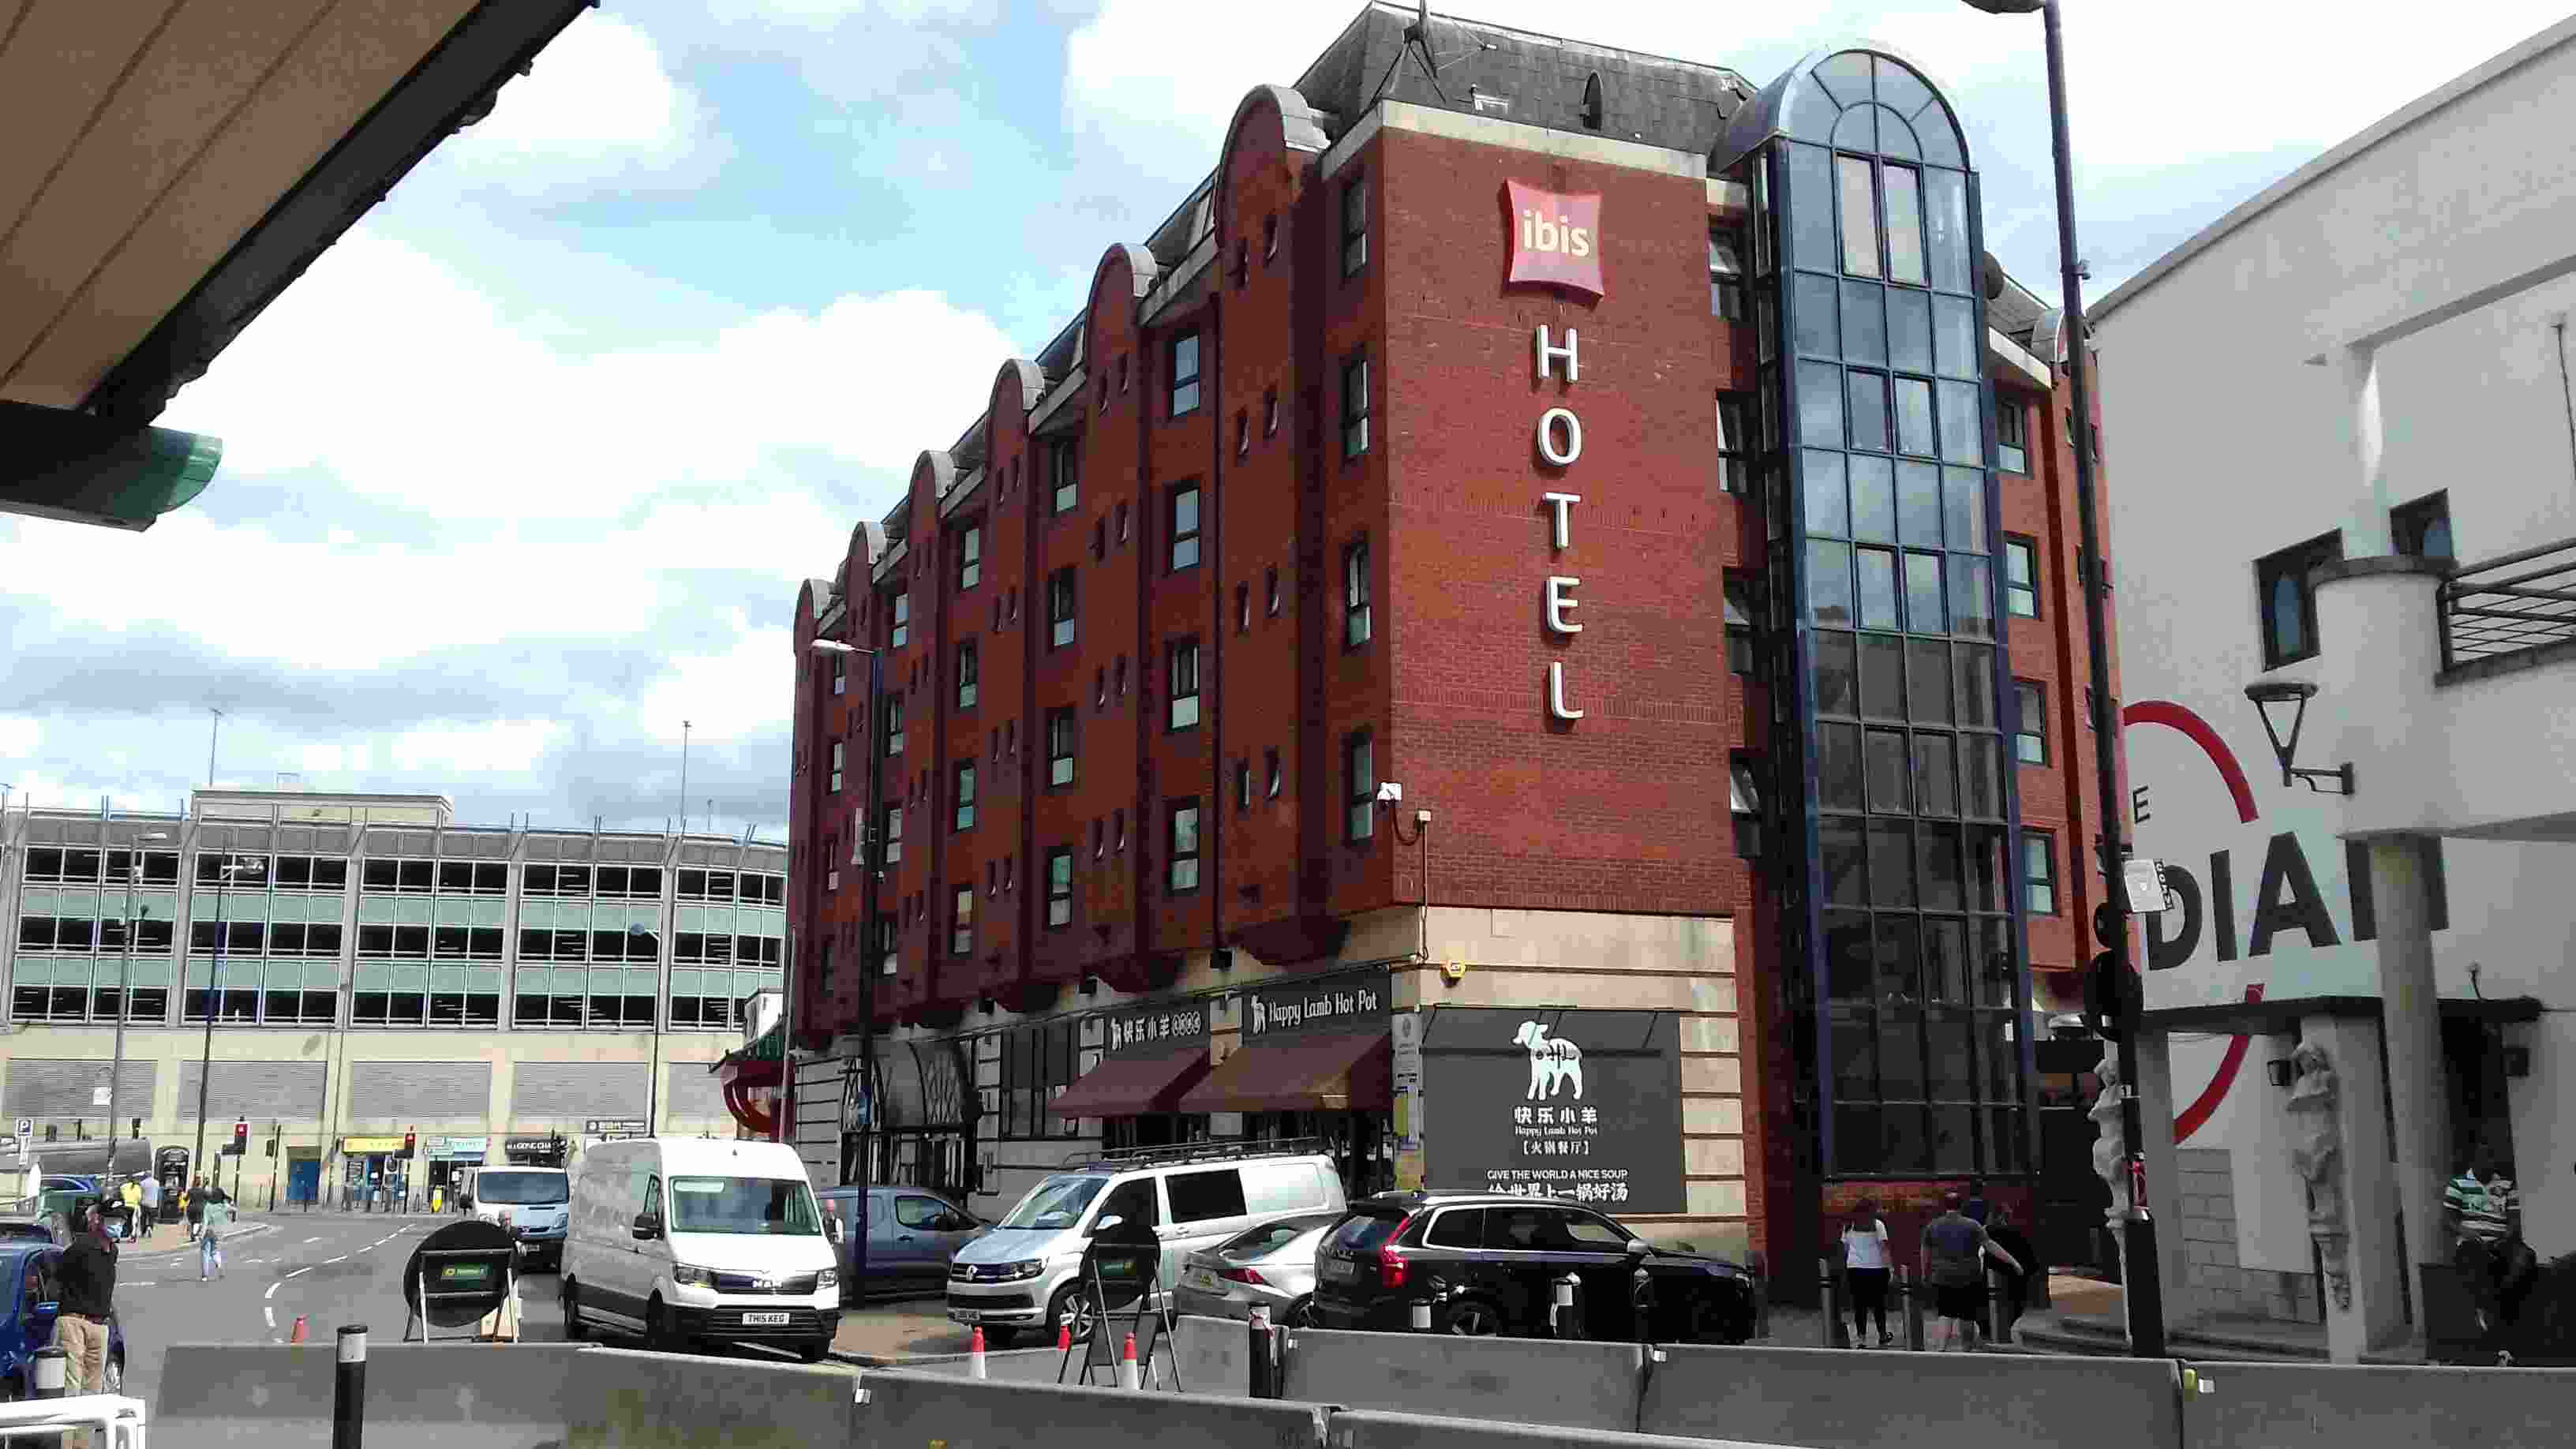 ImagesBirmingham/Birmingham Hotel Ibis, Ladywell Walk.jpg